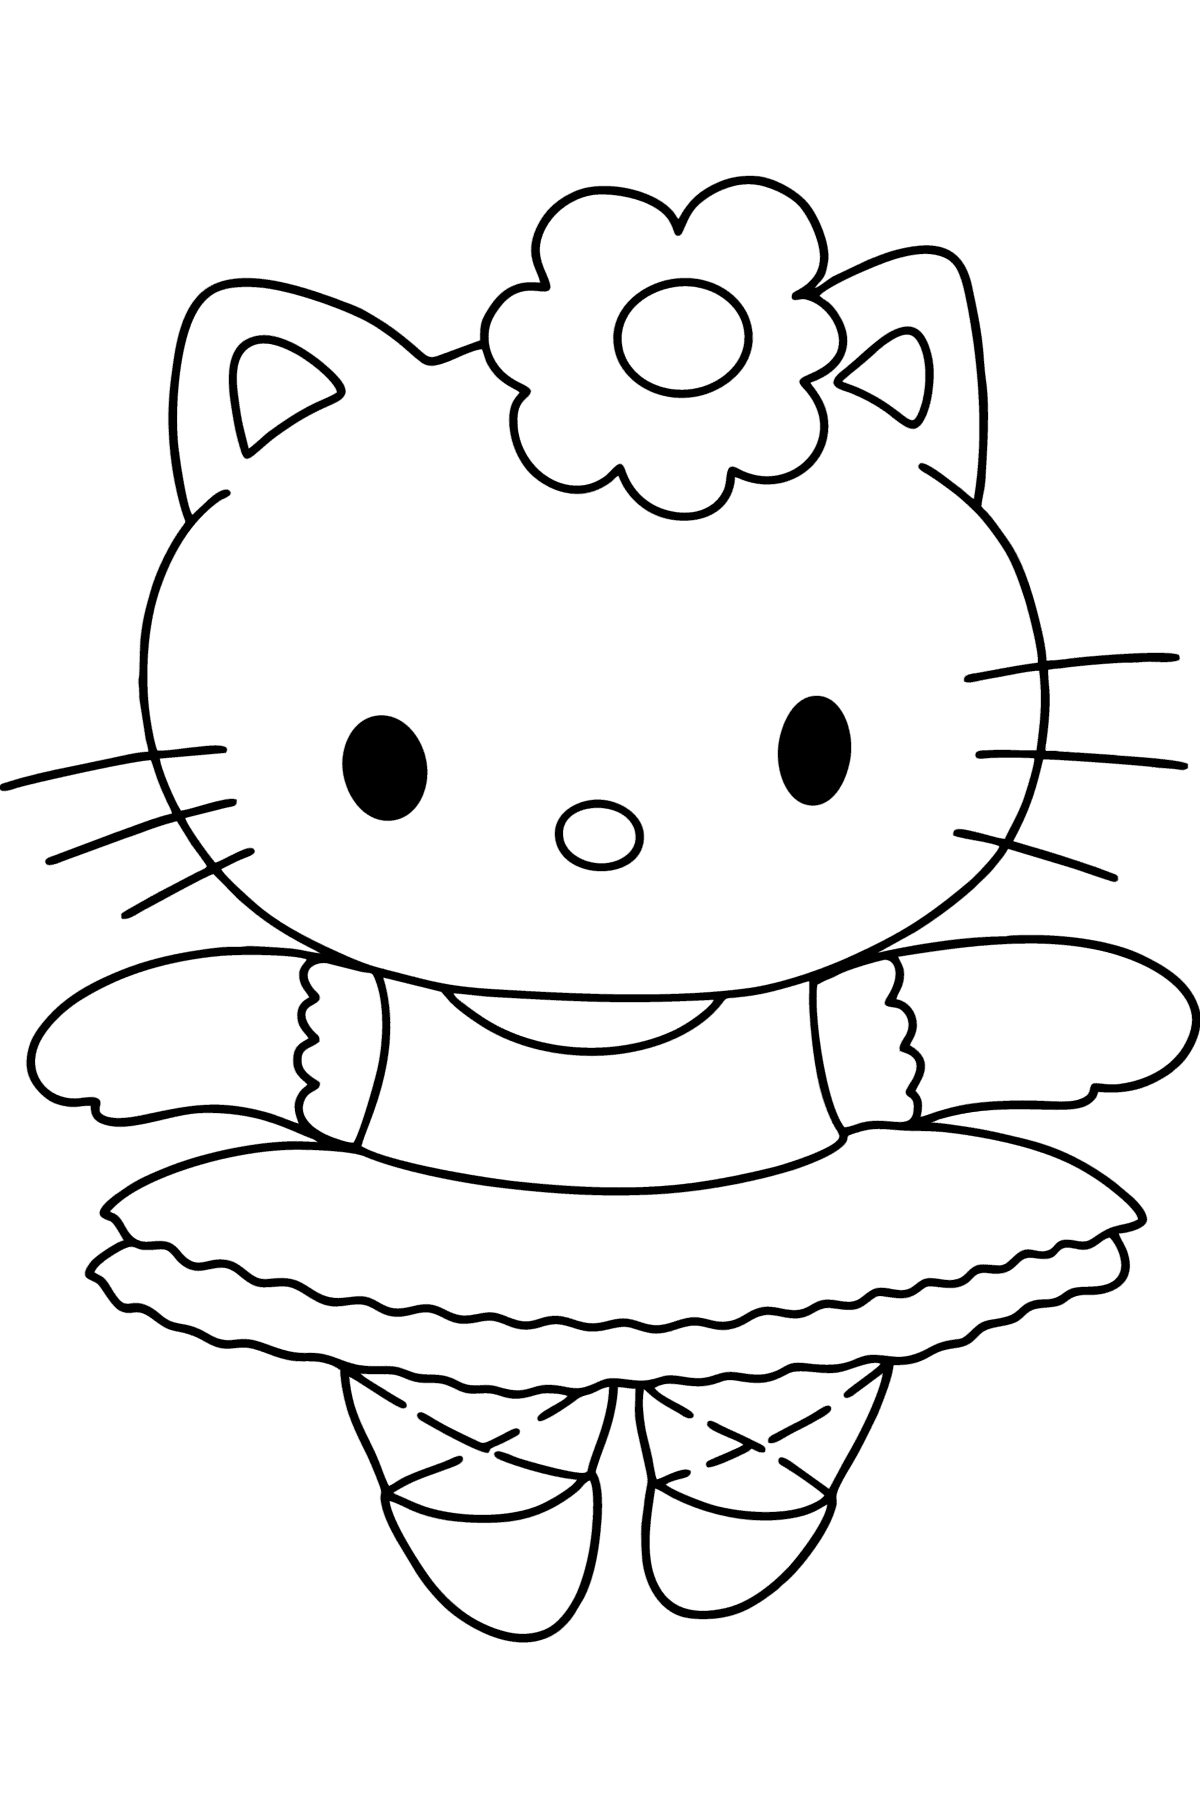 Boyama sayfası Hello Kitty balerin - Boyamalar çocuklar için